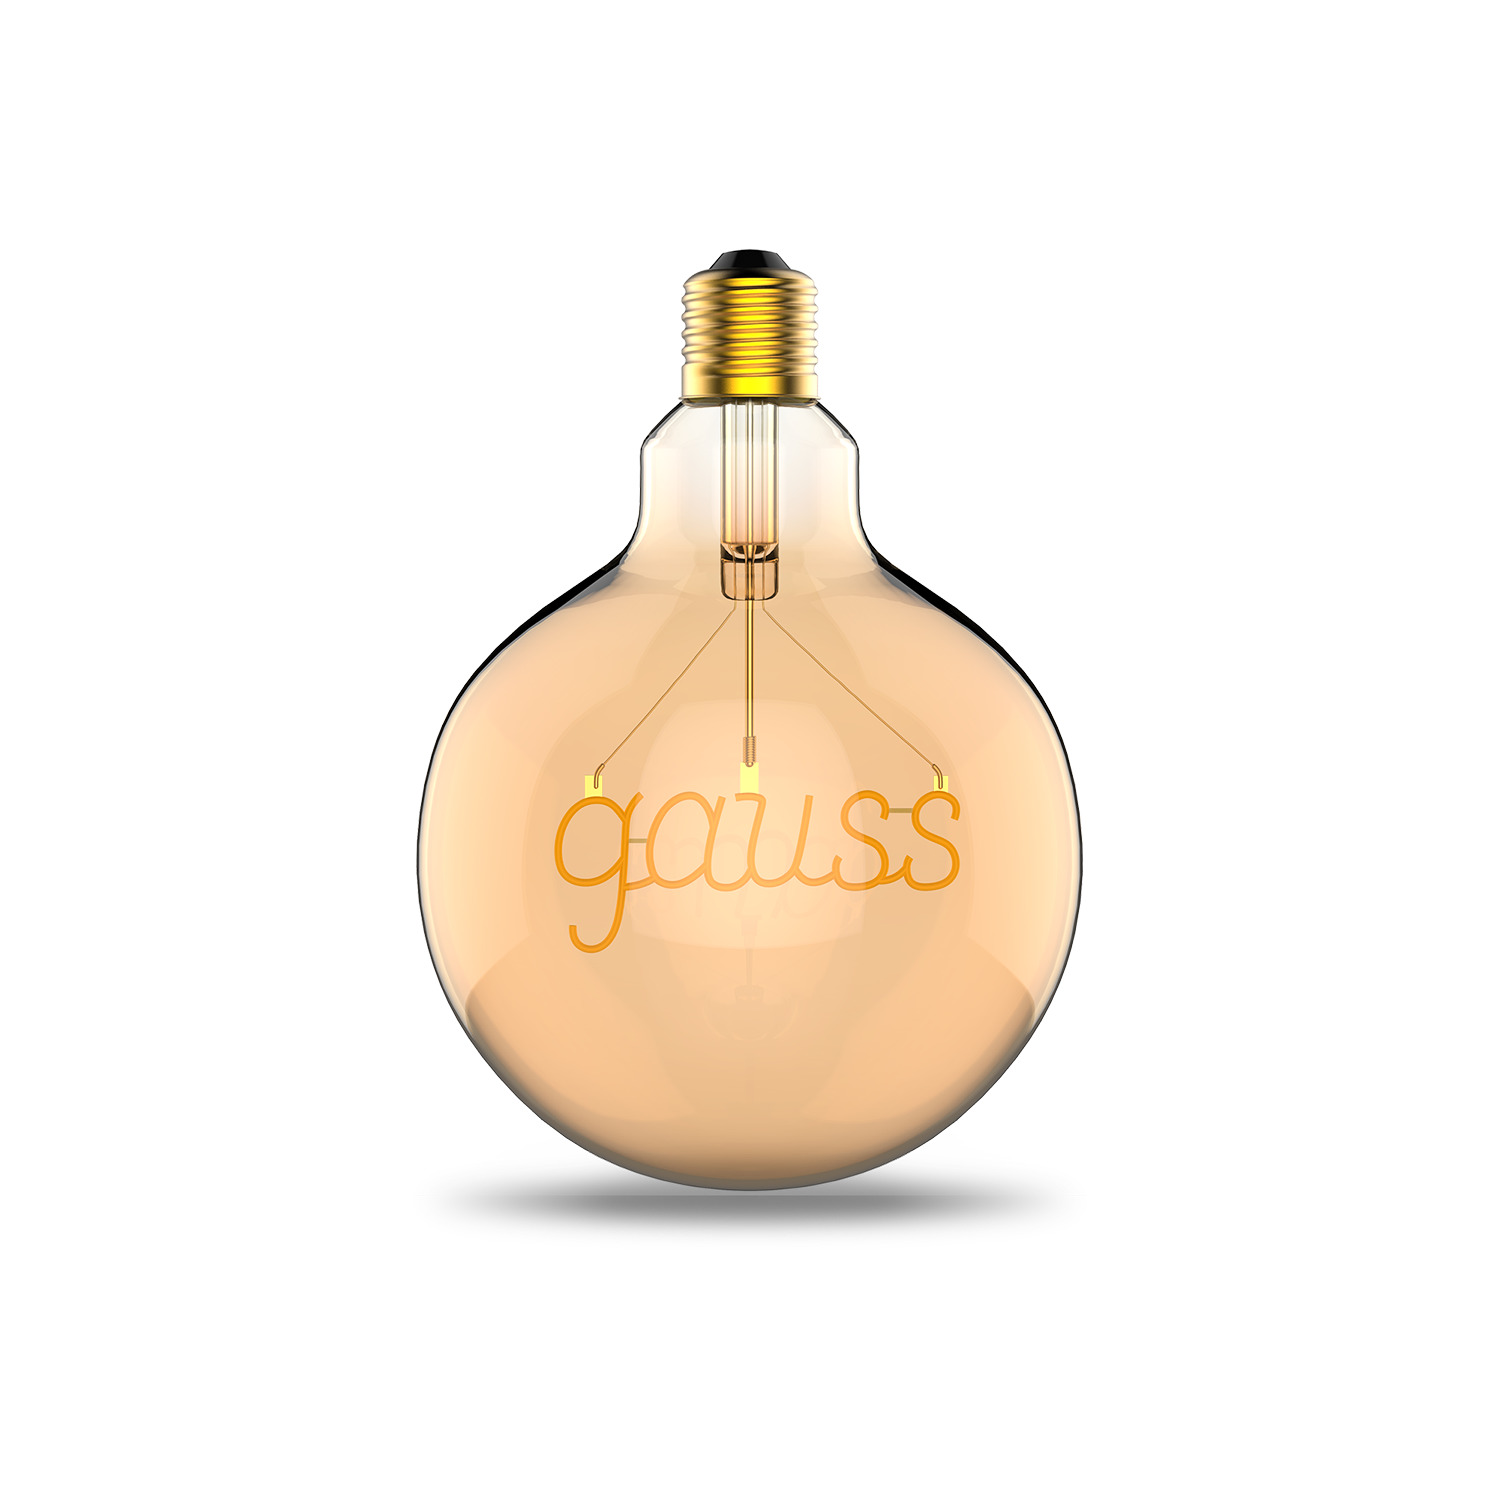 Лампочка Gauss Filament E27 175802003, цвет янтарный - фото 2